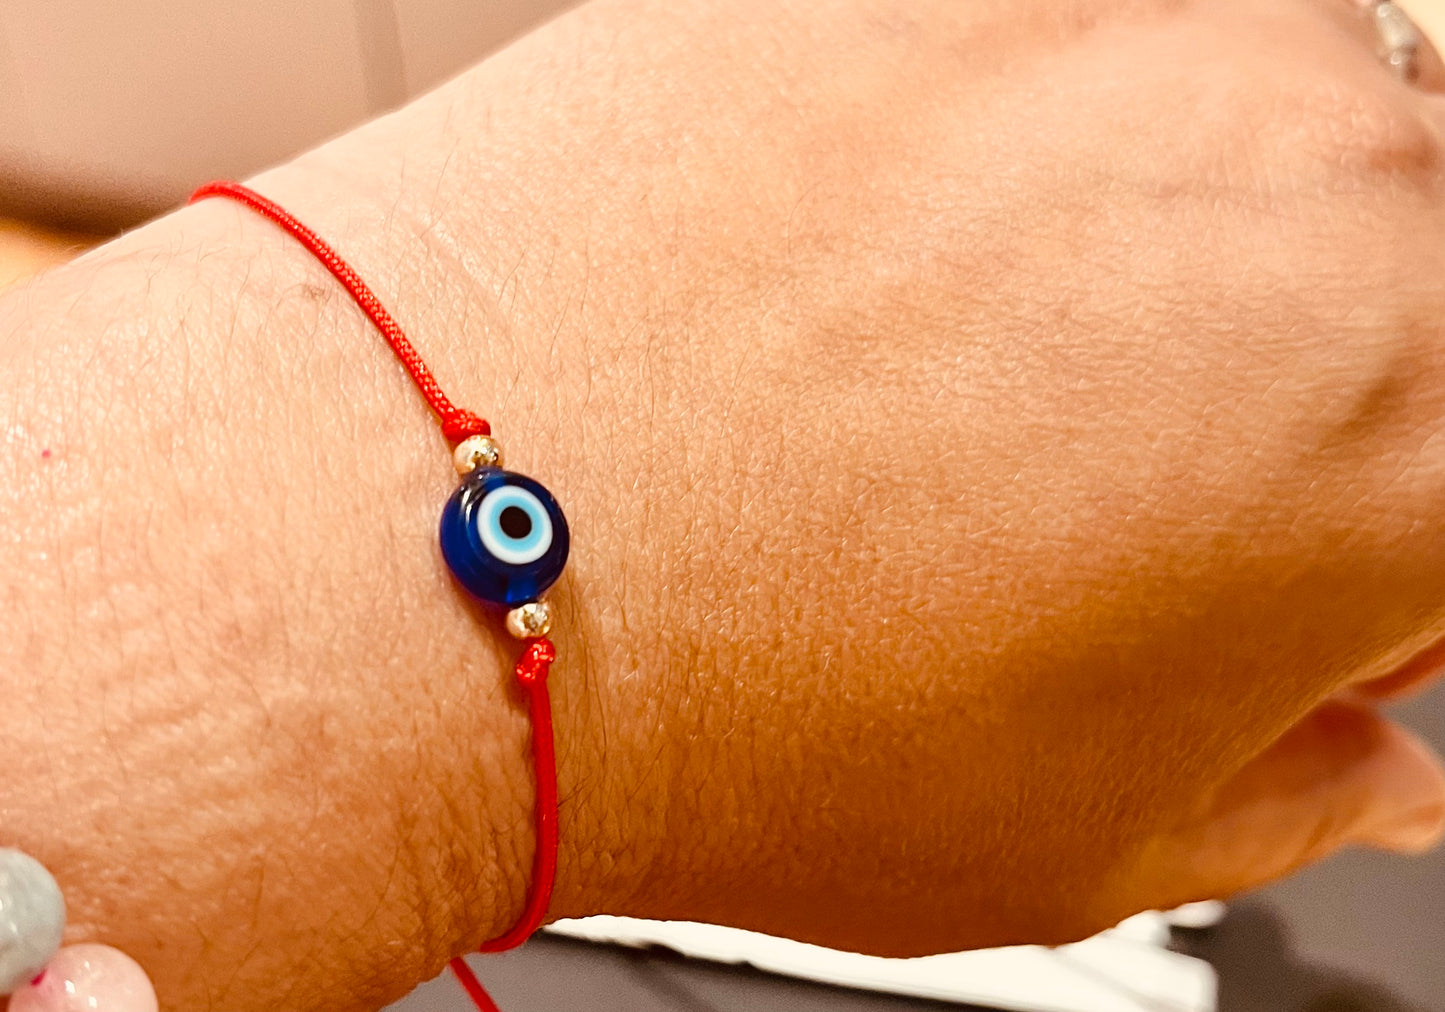 Red and black string Evil Eye protection adjustable Bracelets